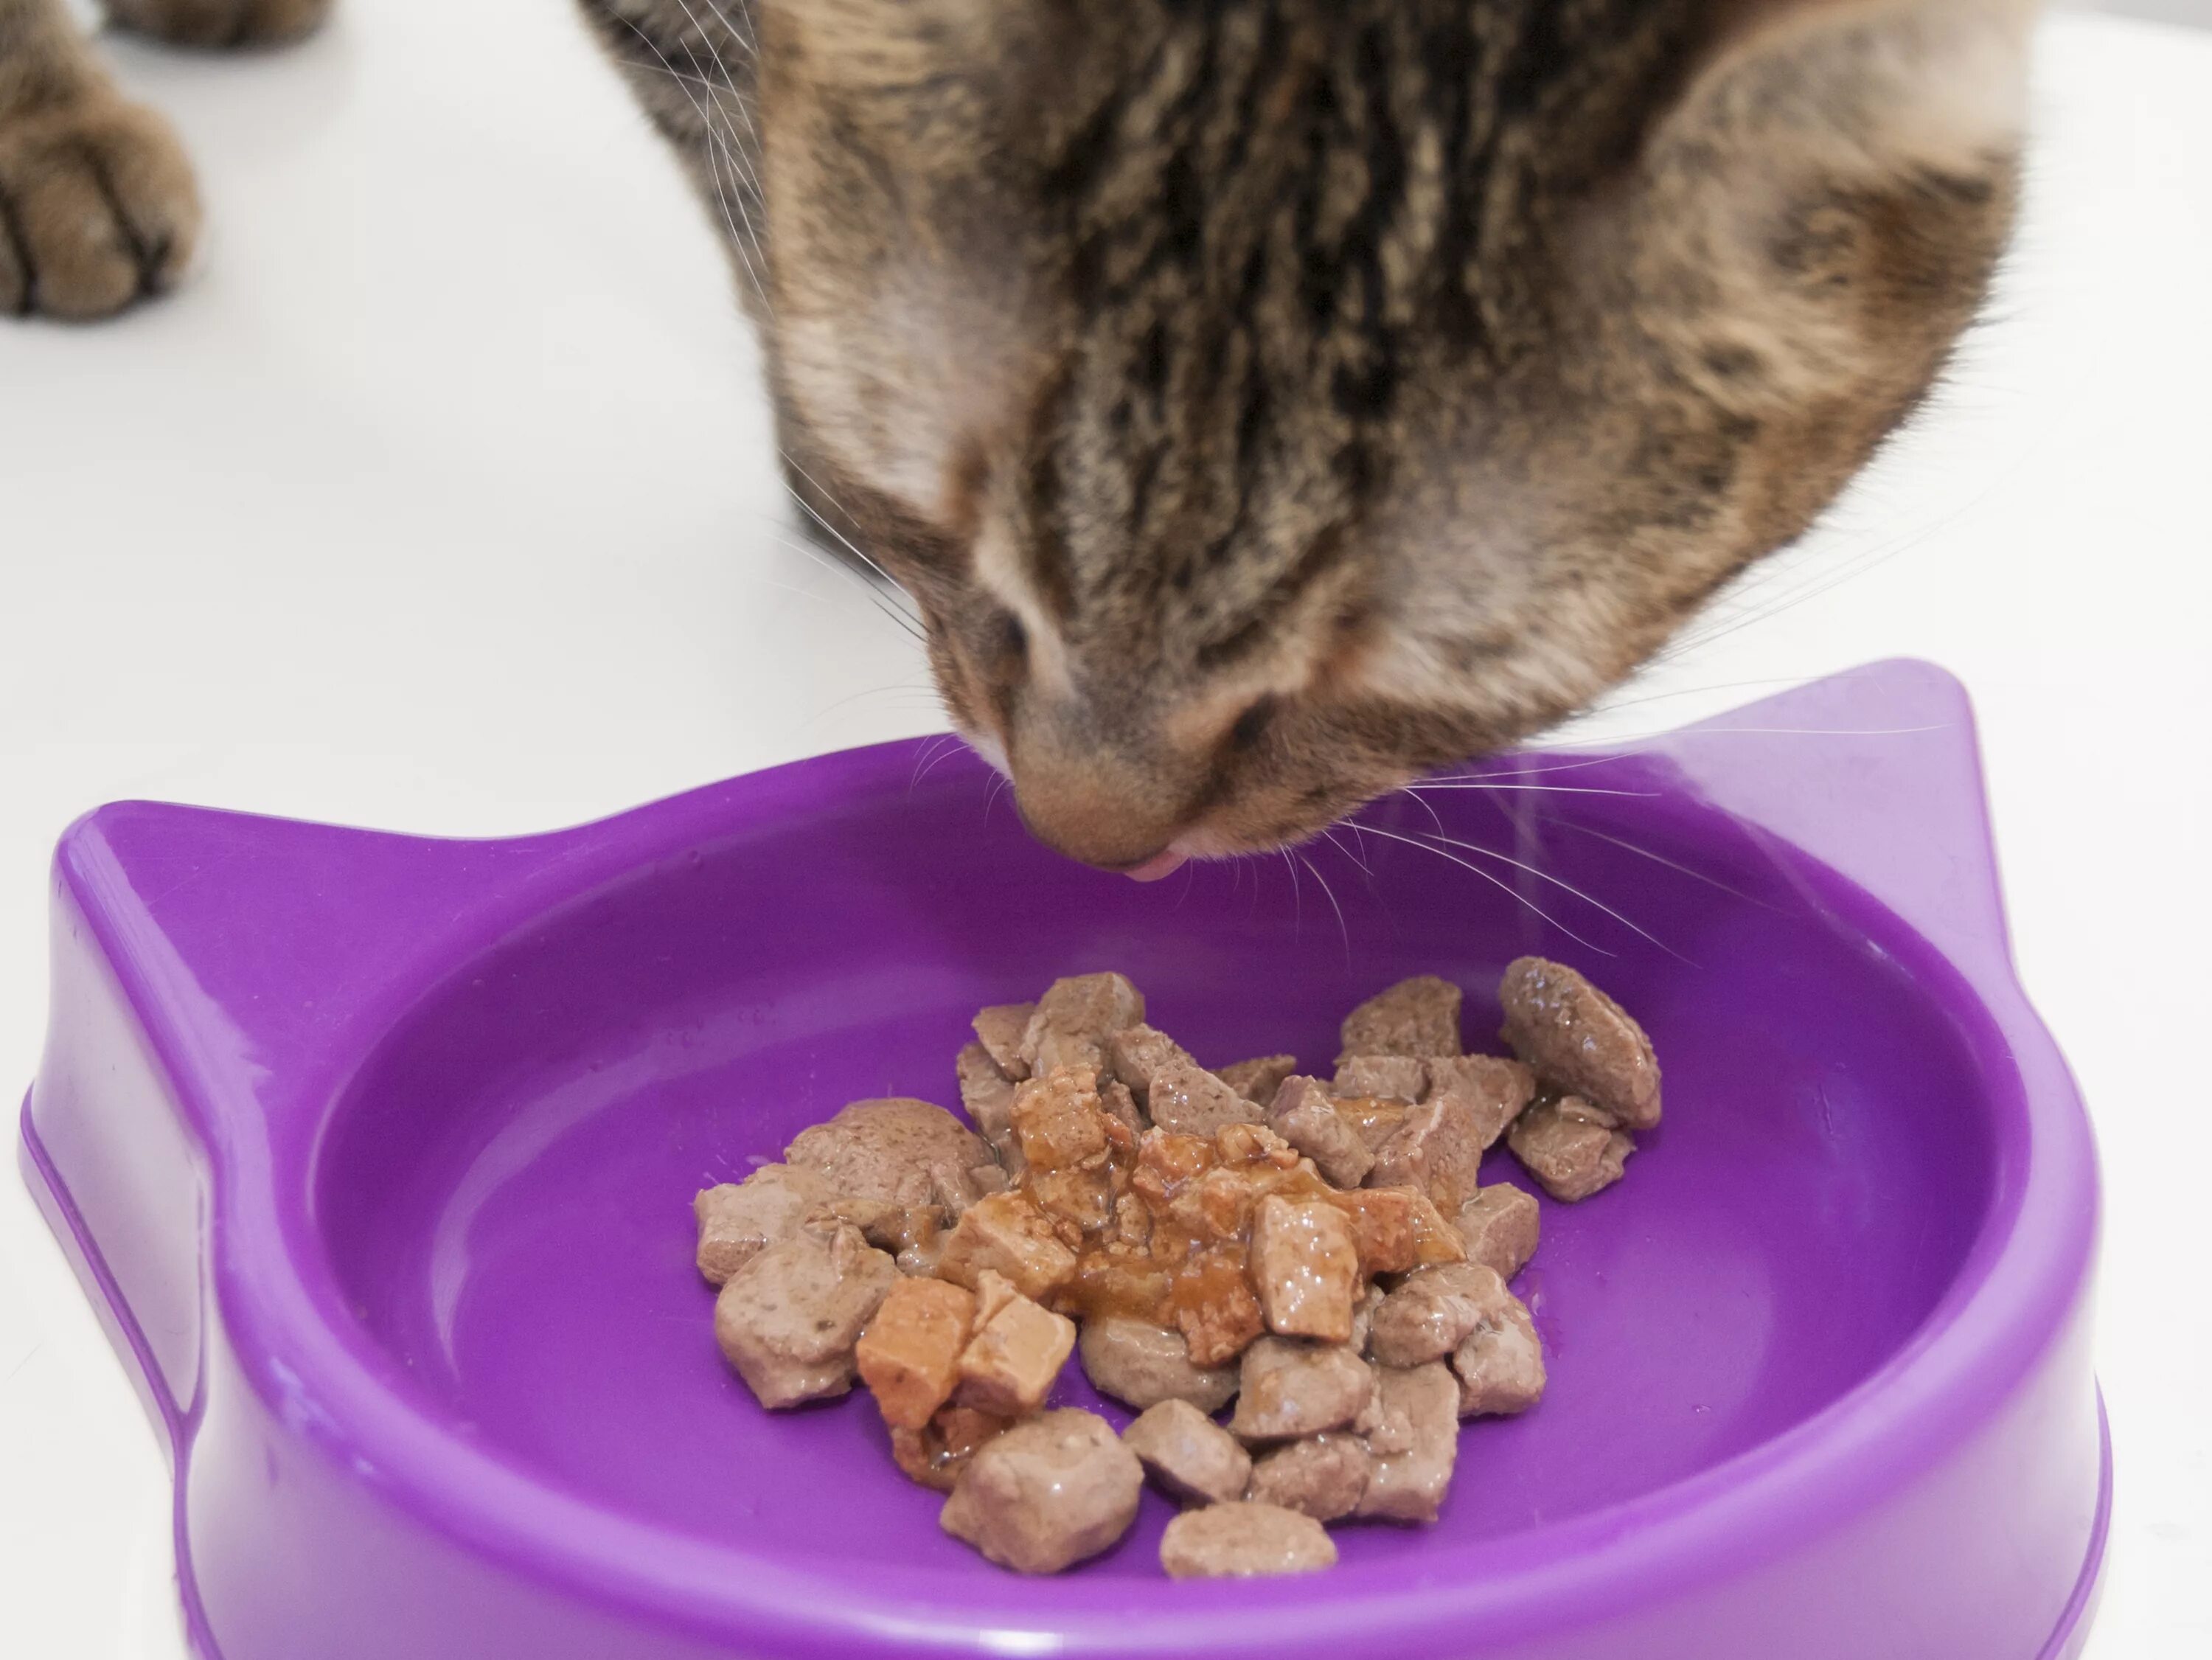 Кошачий корм. Мокрые корма для кошек. Еда для кошек. Корм для котиков в миске. Сухой корм и мясо можно